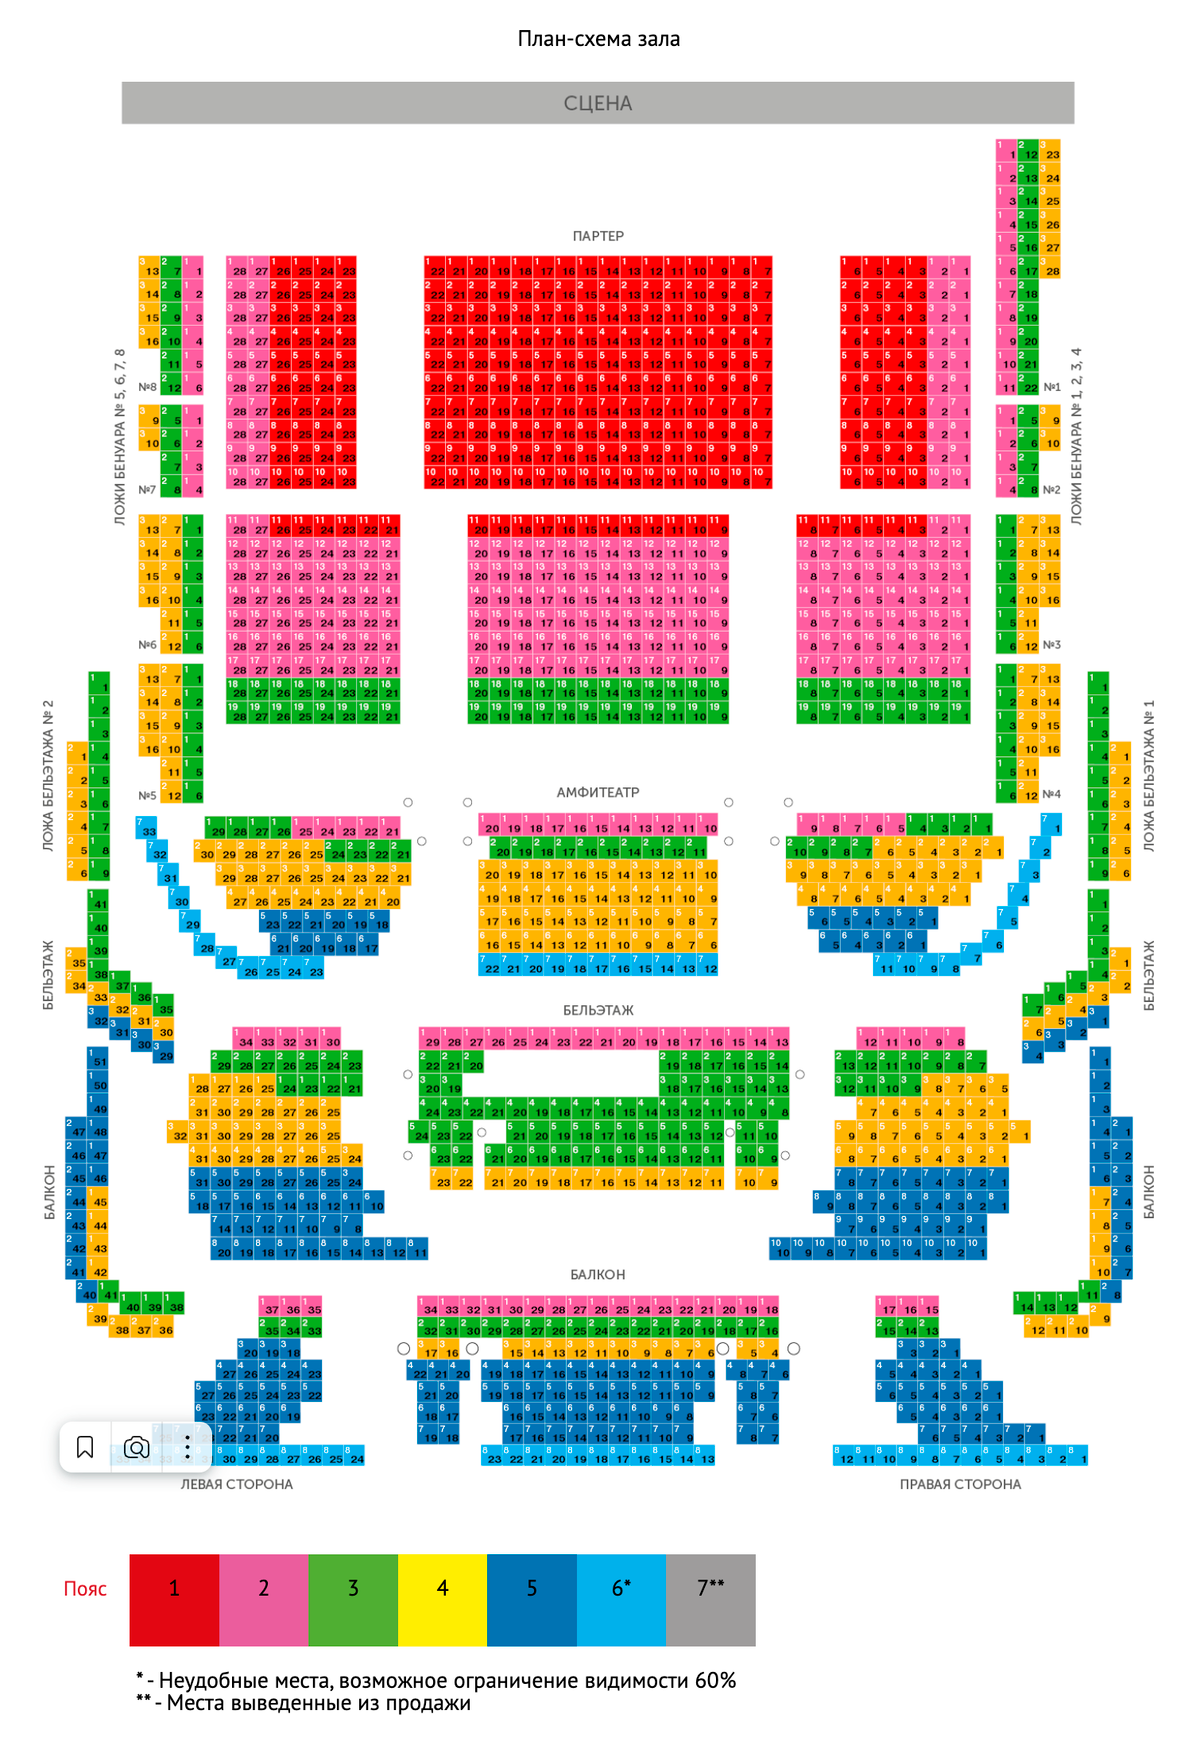 Схема ценовых поясов Московского театра оперетты: самые дорогие места — в партере, самые дешевые — задние ряды на балконе